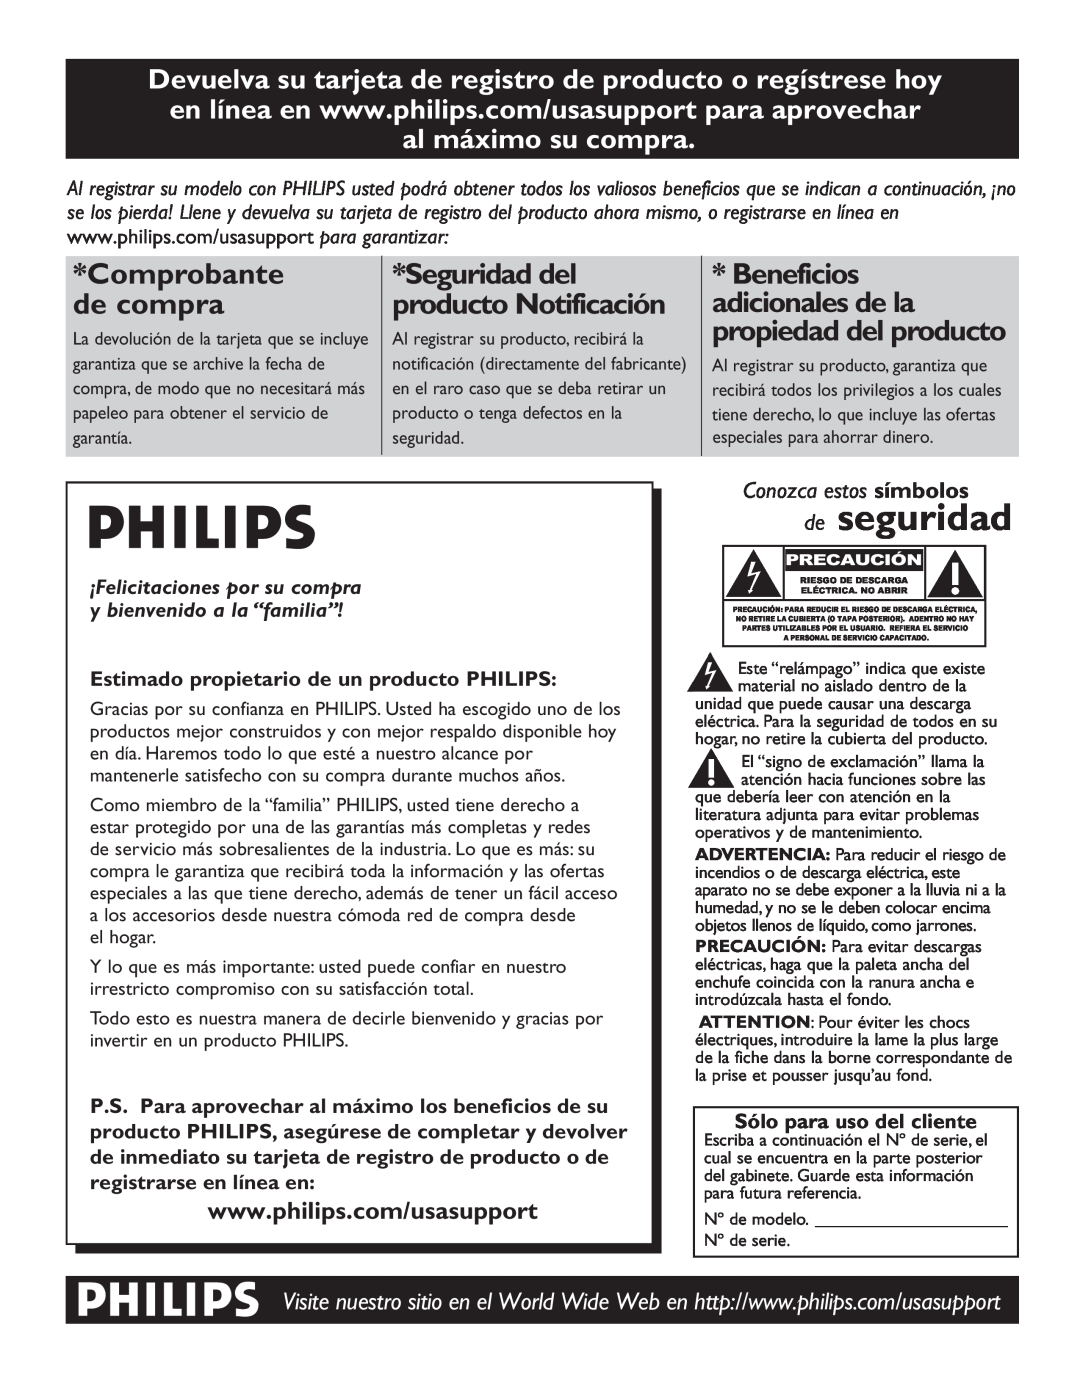 Philips 60PL9220D Devuelva su tarjeta de registro de producto o regístrese hoy, al máximo su compra, de seguridad 